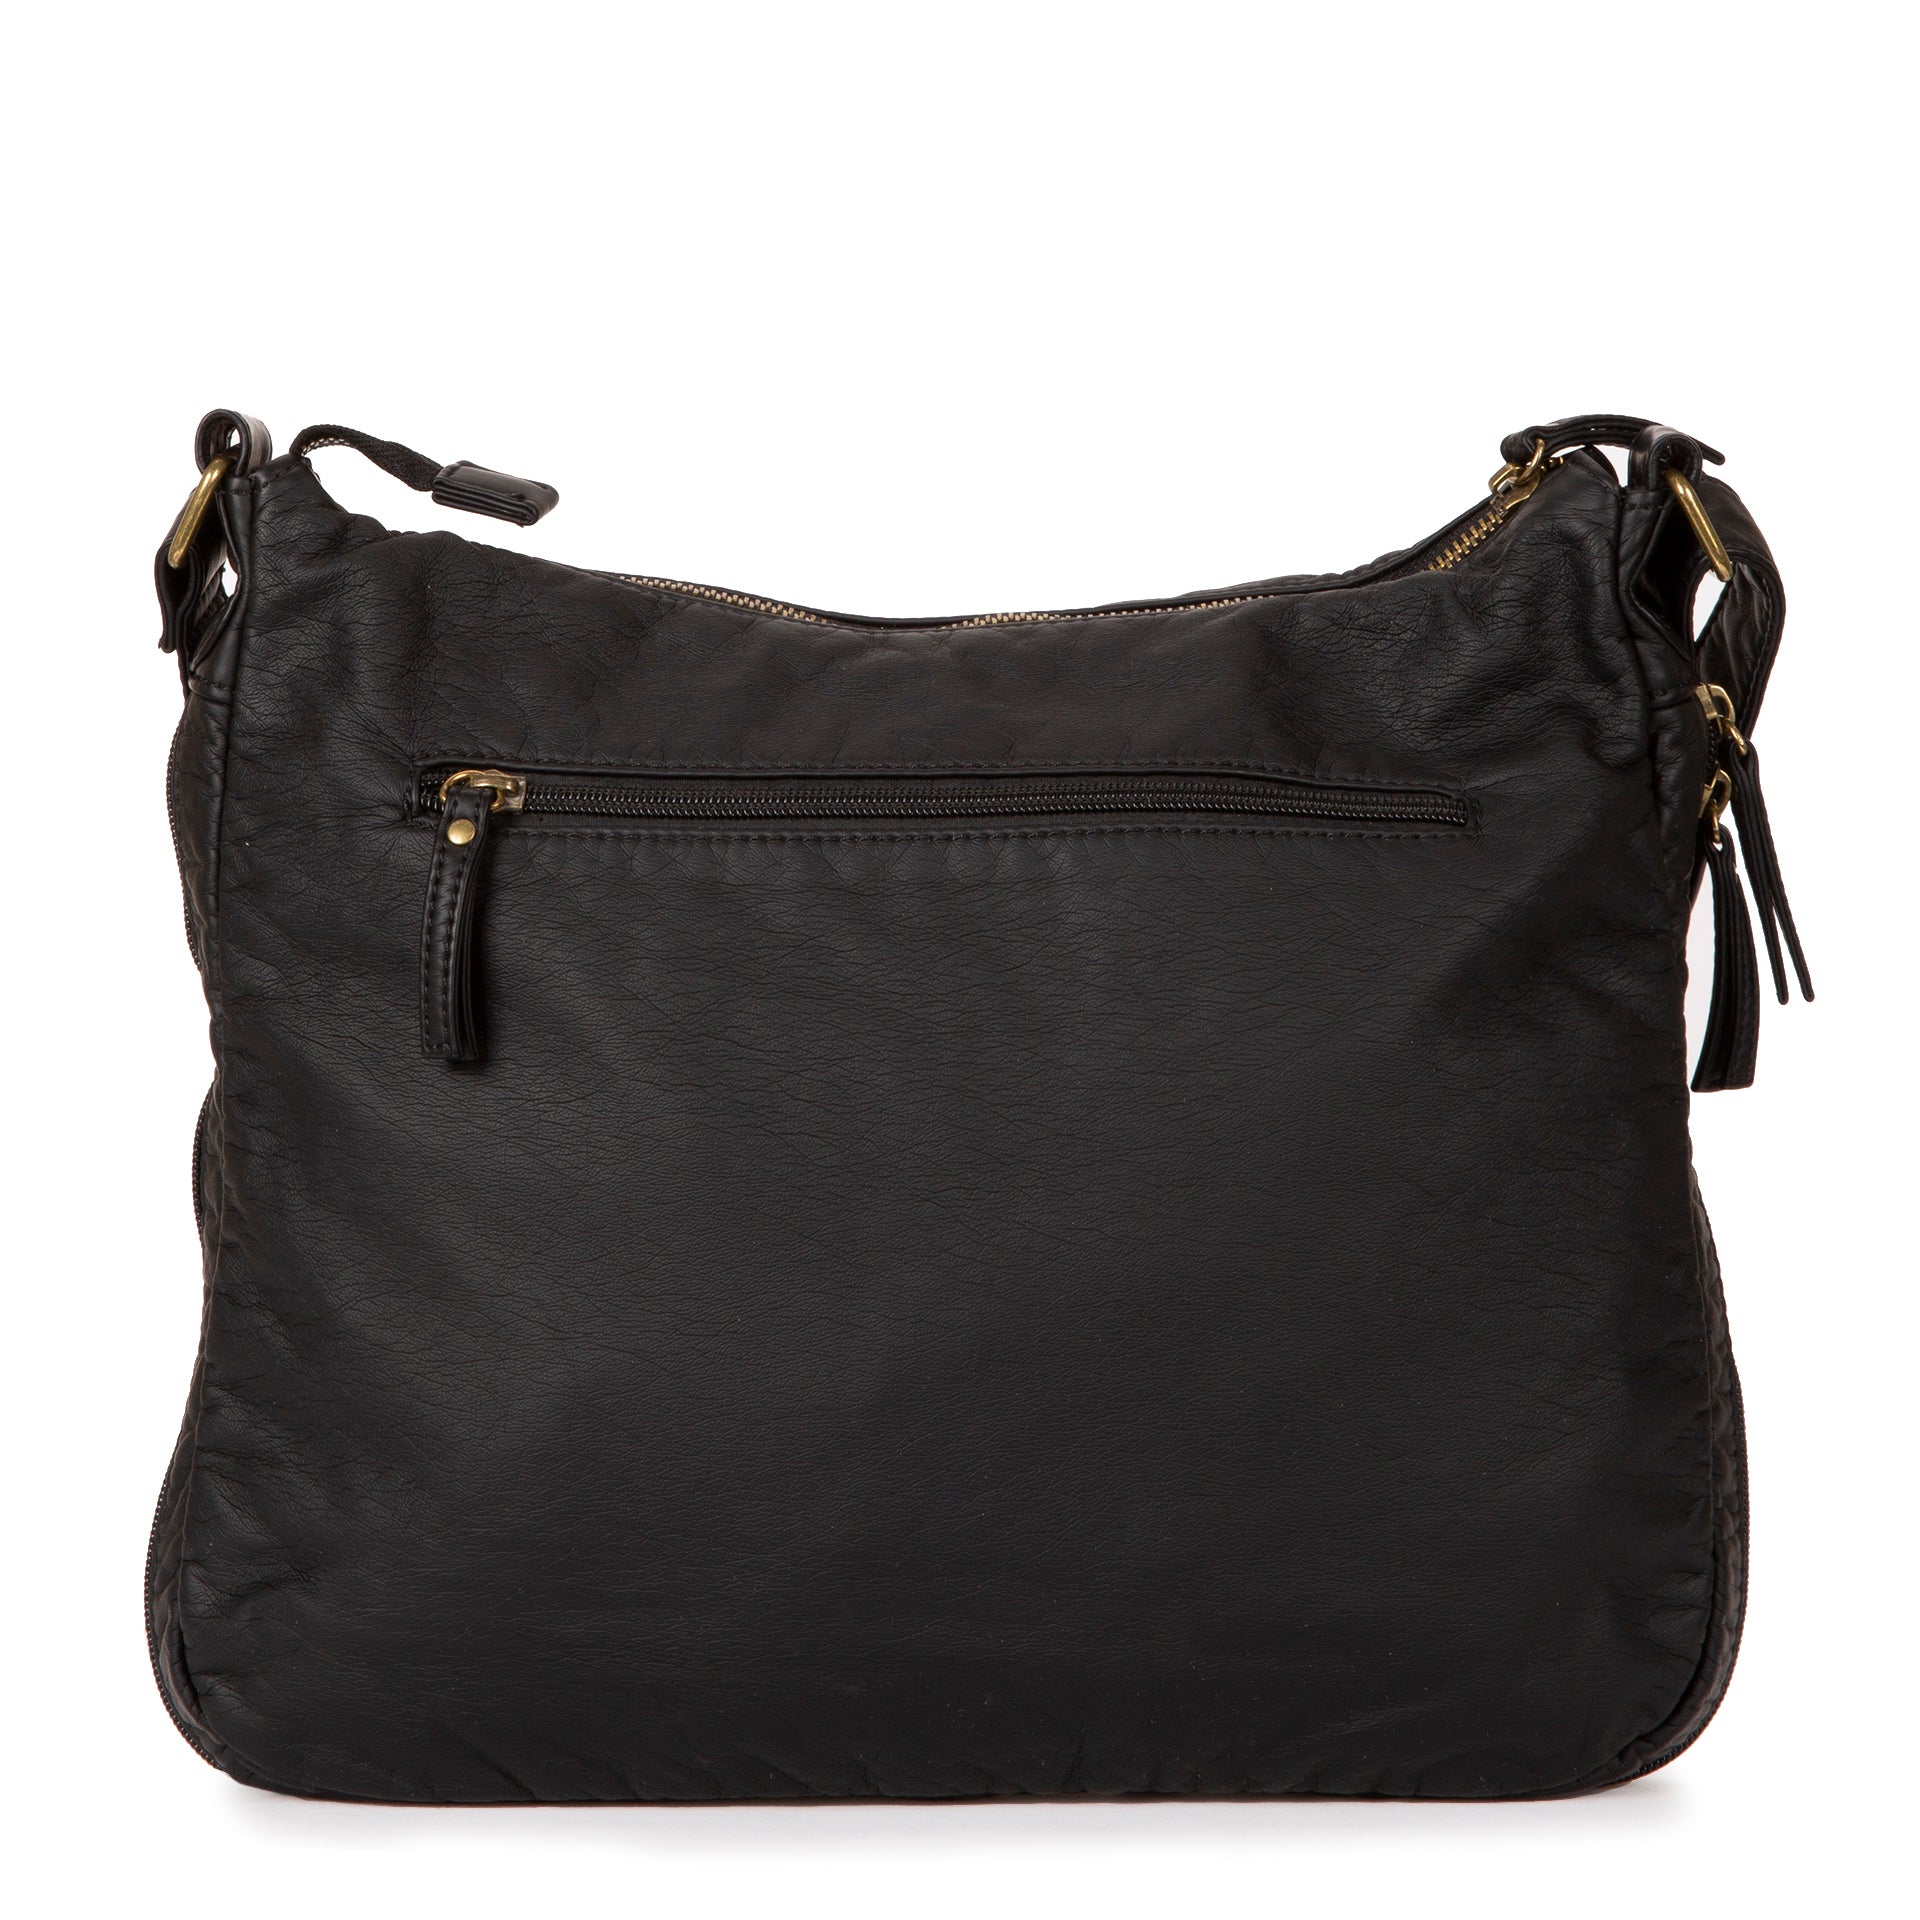 Mondo Bueno Solid Elephant Wash Crossbody Handbag One Size Brown: Handbags:  Amazon.com